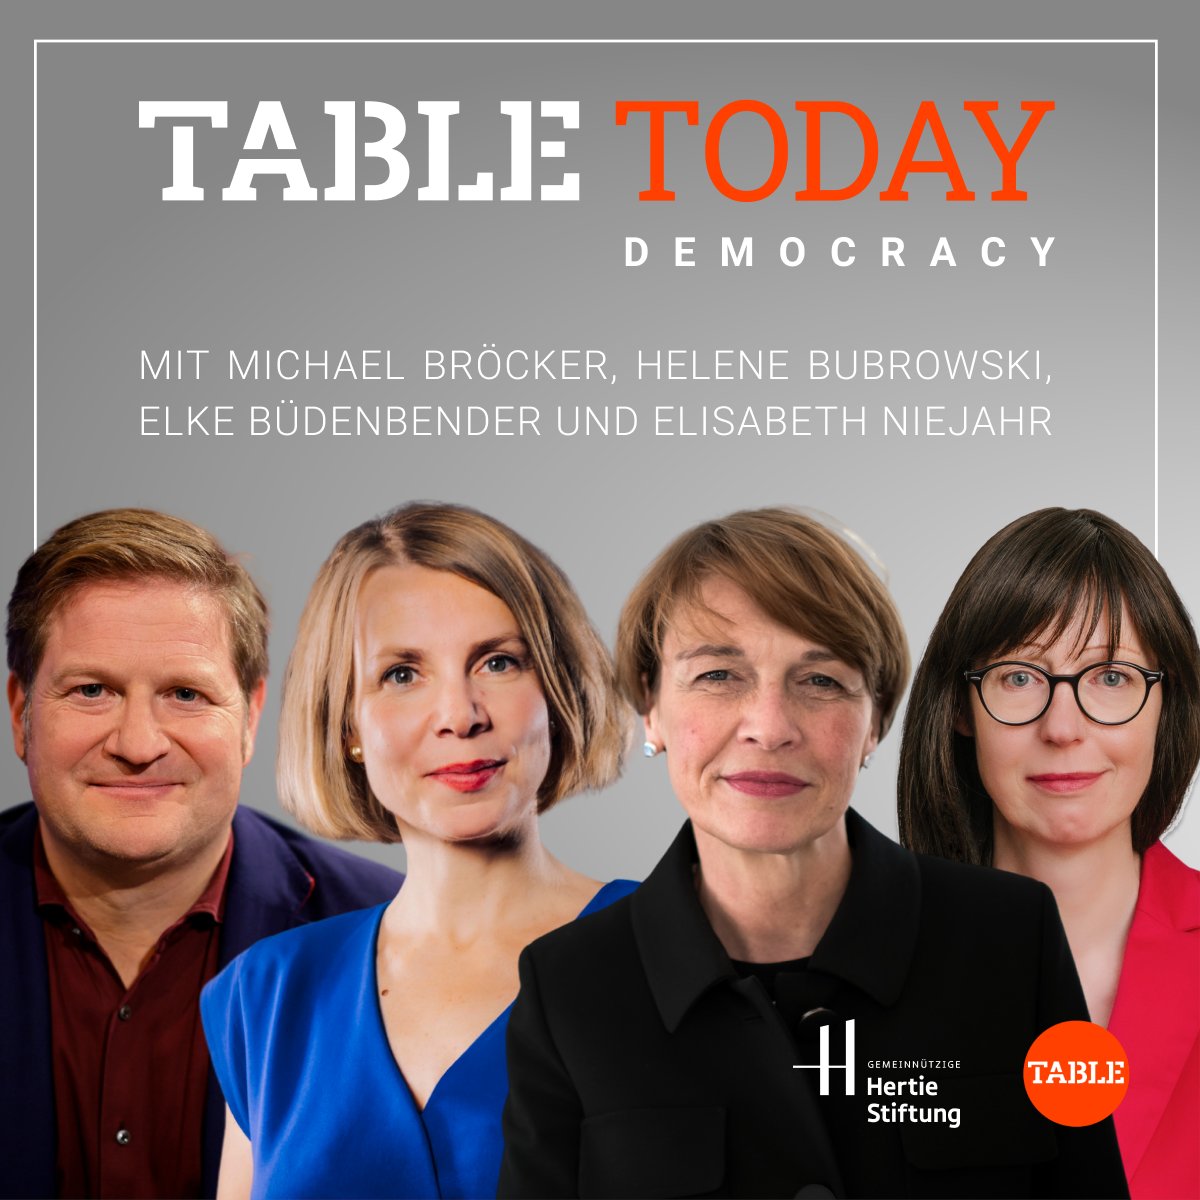 Morgen ist es soweit: Table Today Democracy Live Wir freuen uns auf Sie! Hier können Sie sich noch schnell anmelden 👉 go.table.media/rWIAx